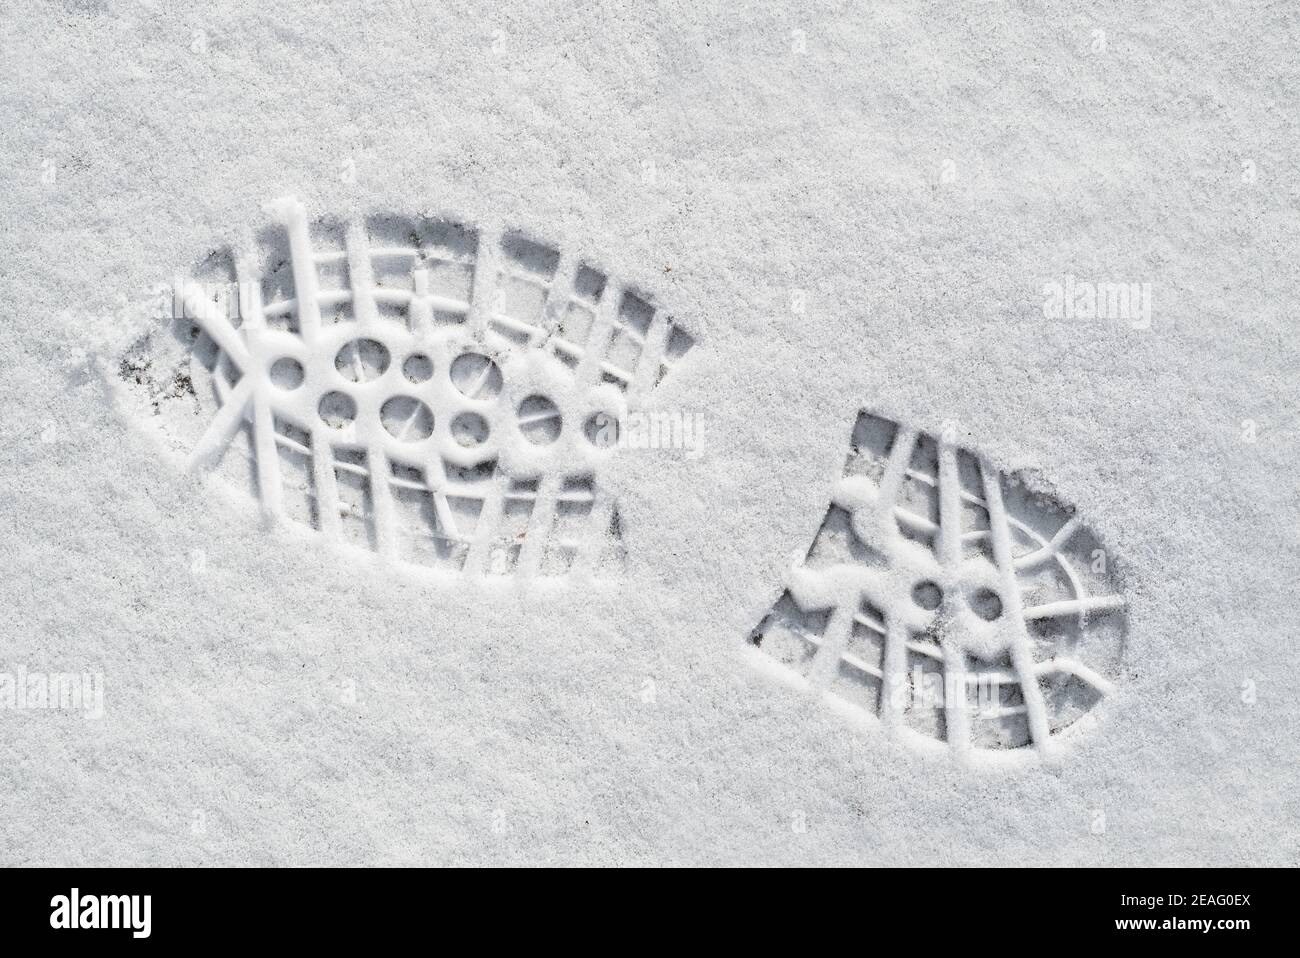 Empreinte/empreinte clairement définie dans la neige fraîche de caoutchouc semelle à ergots avec indentations profondes de chaussures d'alpinisme / randonnée démarrez en hiver Banque D'Images